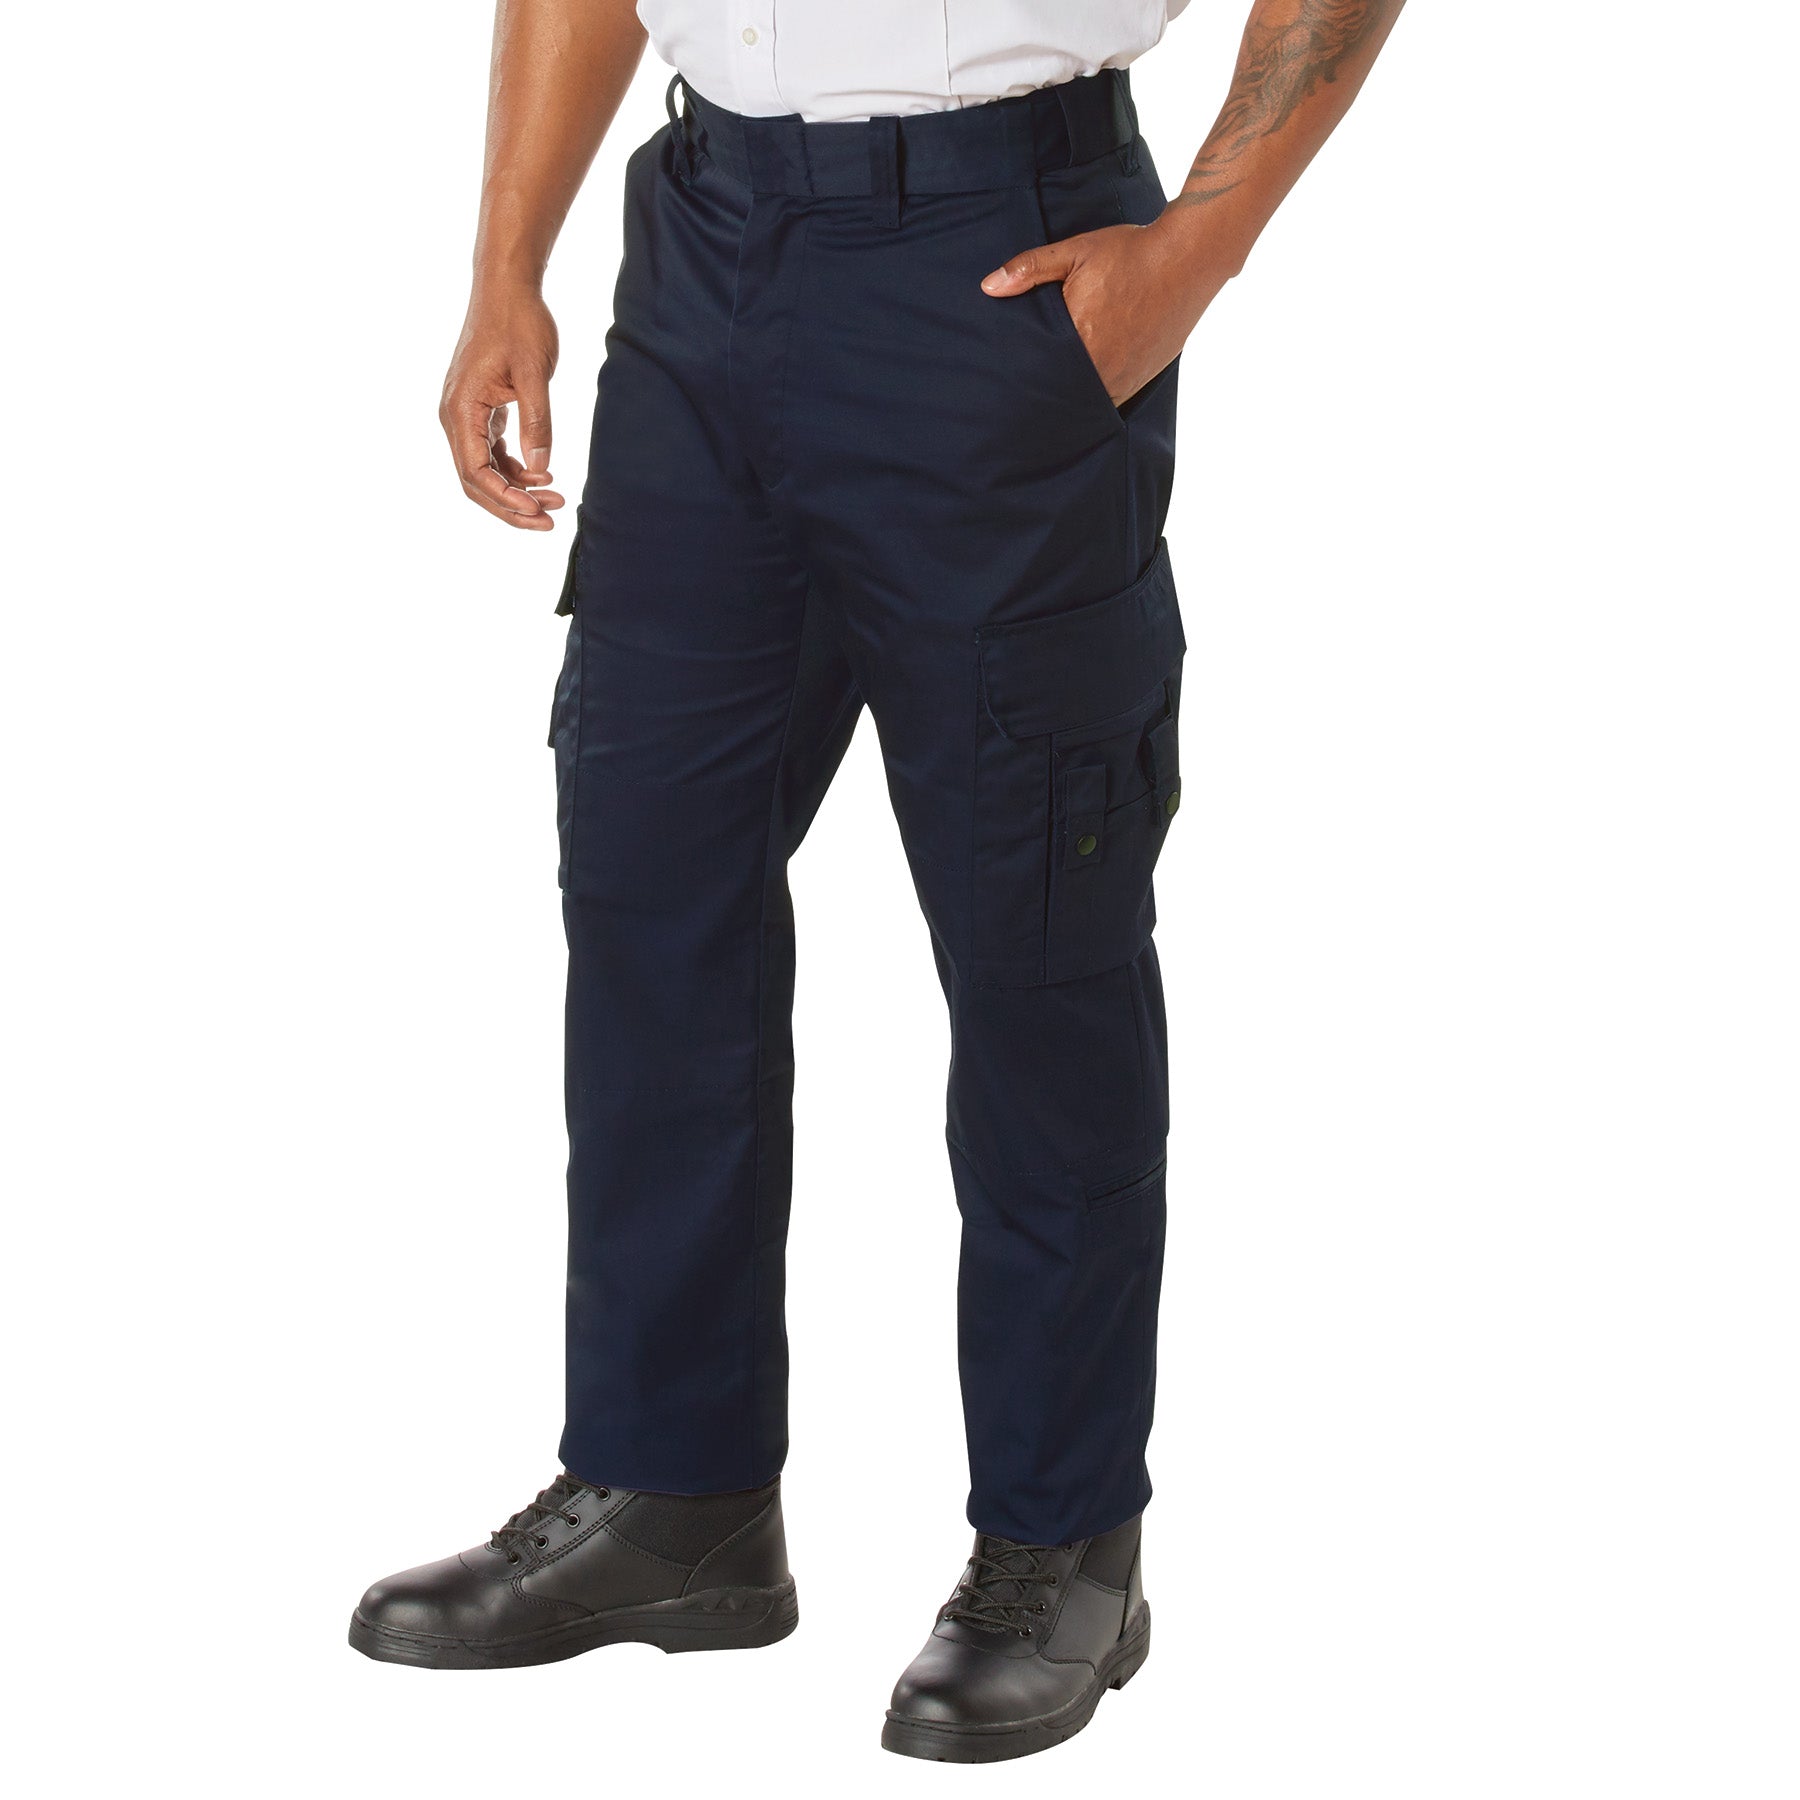 [Public Safety] Men's Poly/Cotton EMT Pants